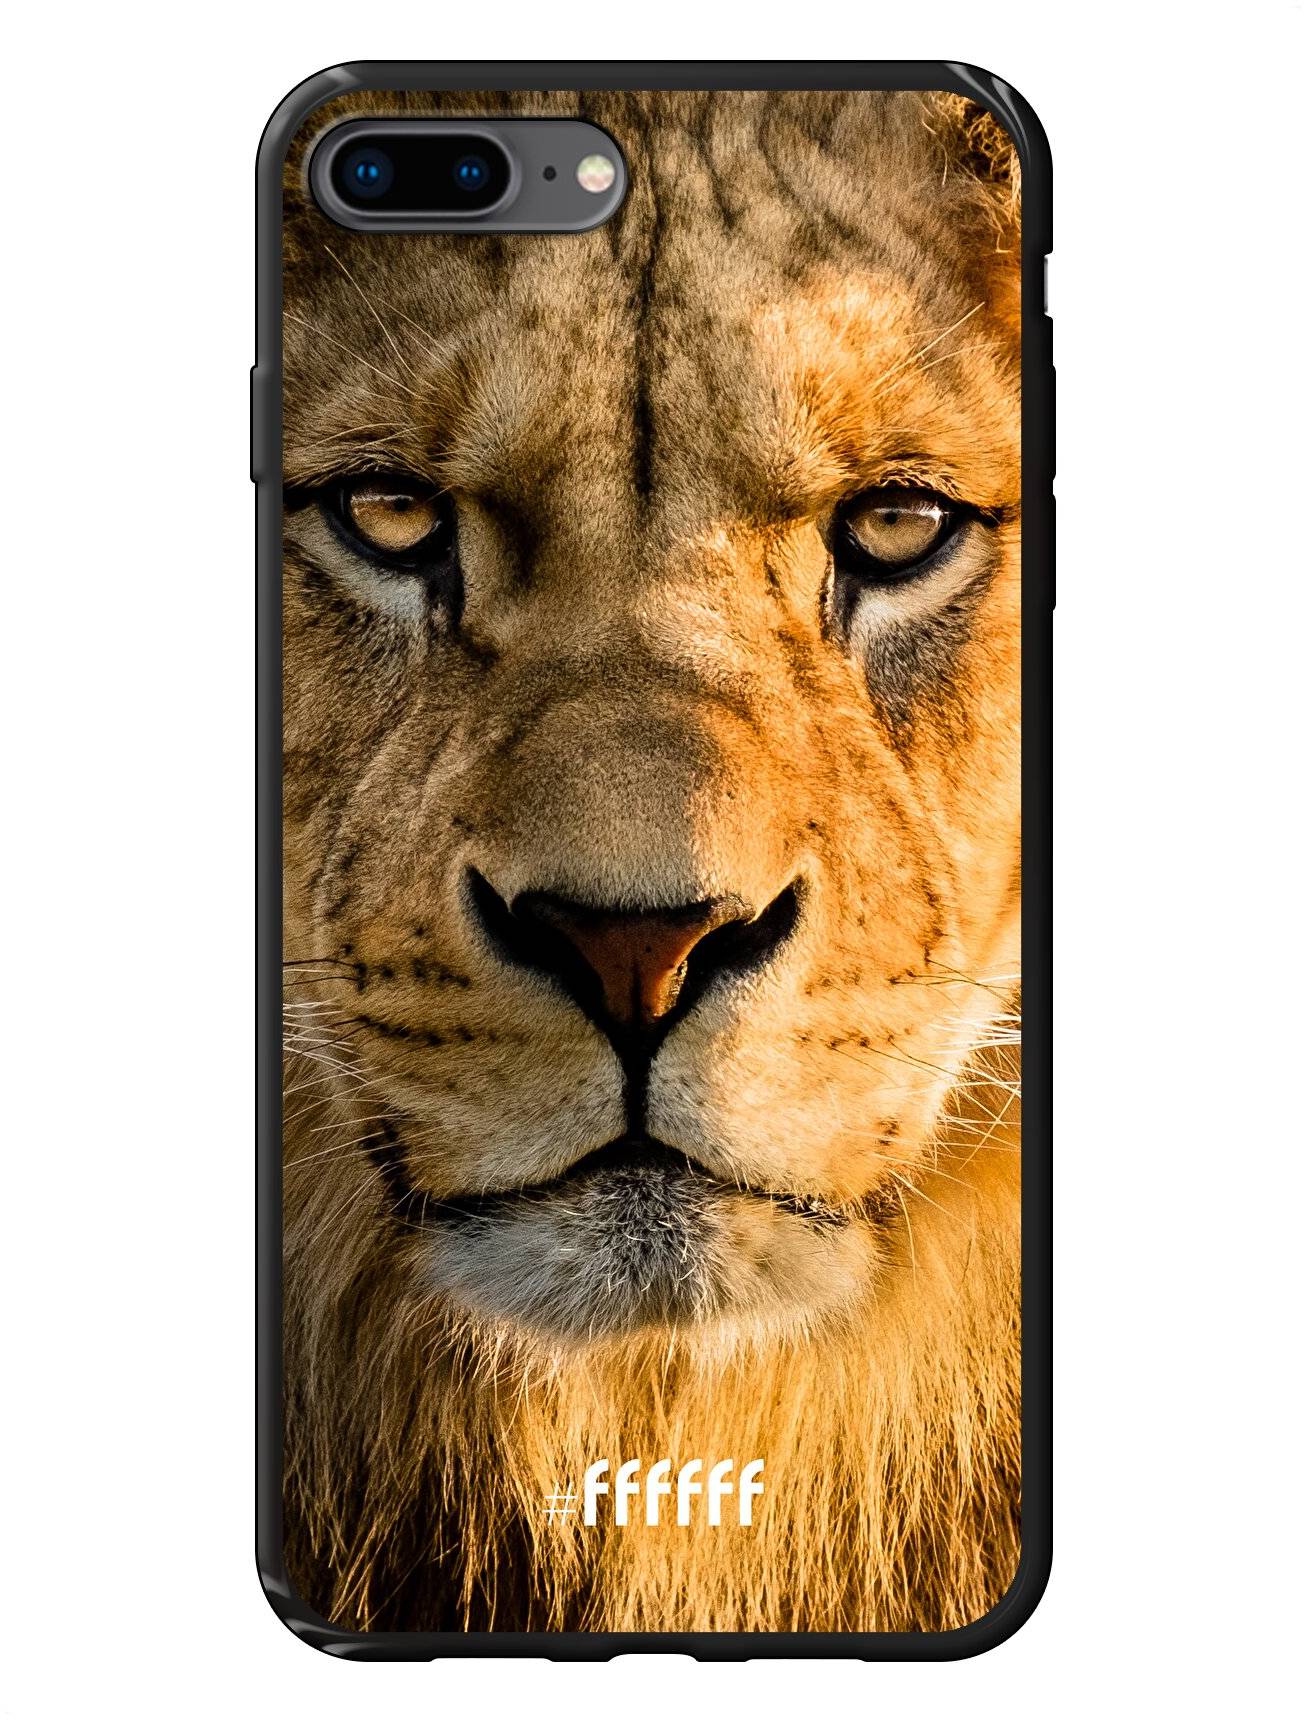 Leo iPhone 8 Plus